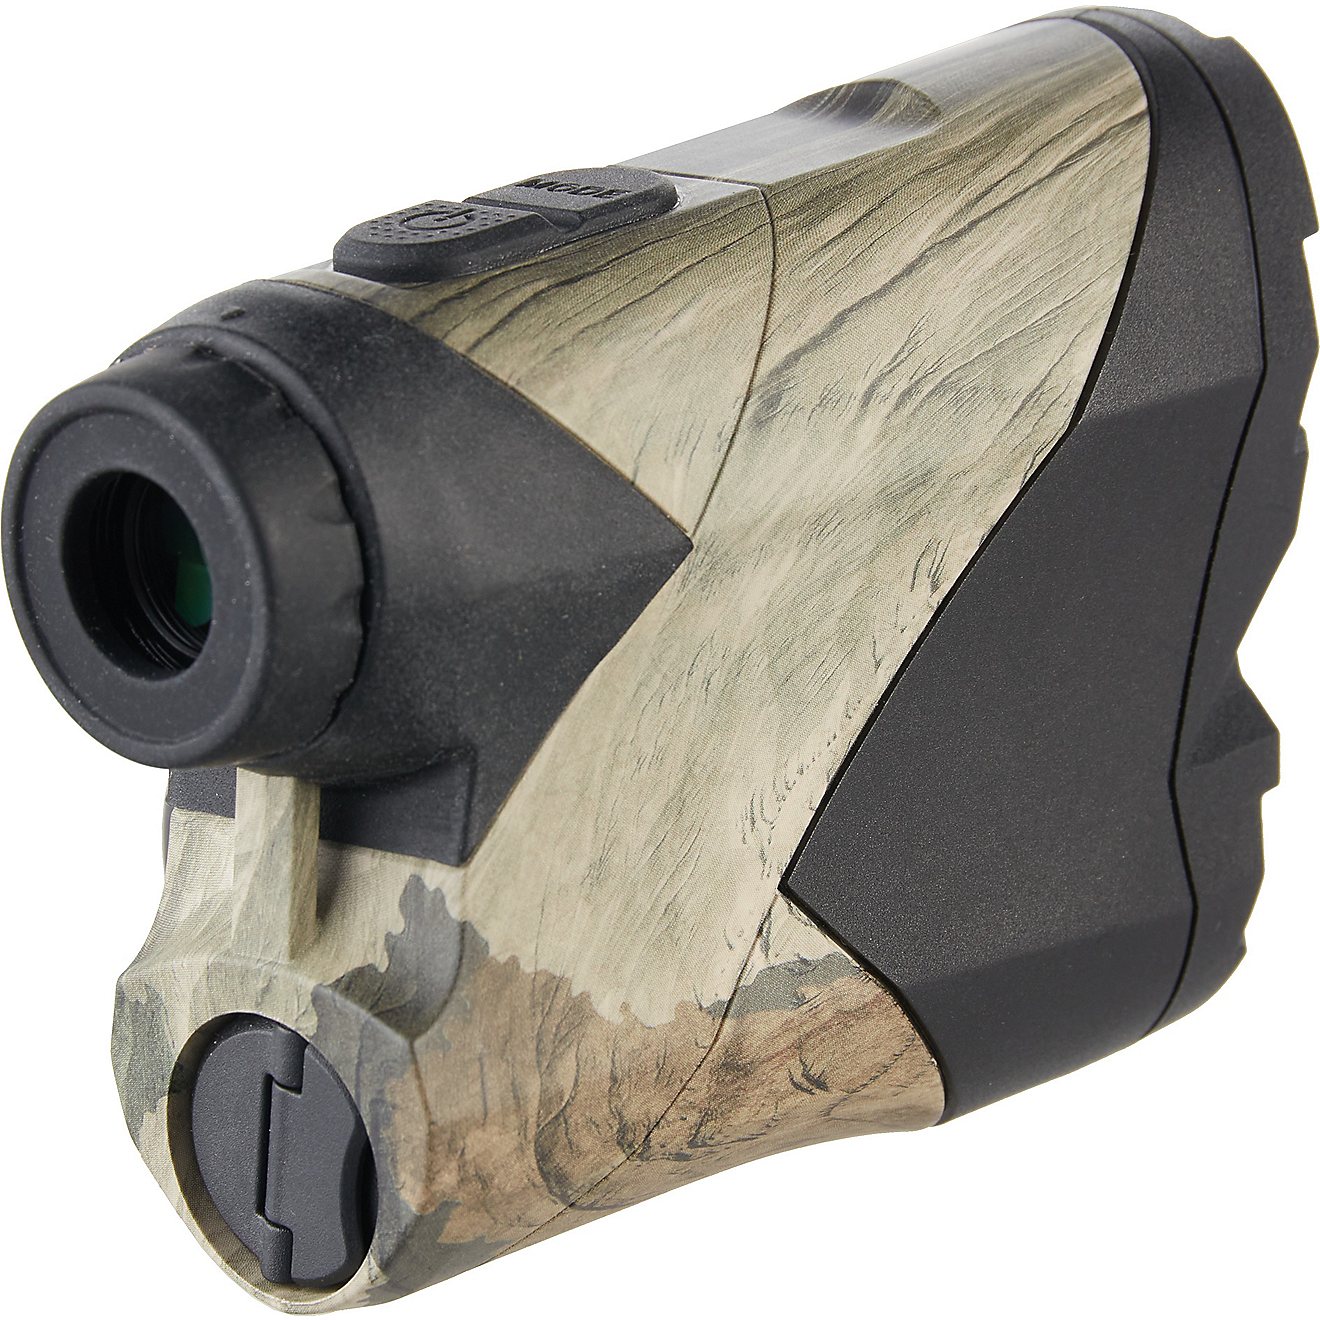 HALO XLR3000 Mossy Oak Terra Gila Laser Range Finder                                                                             - view number 5